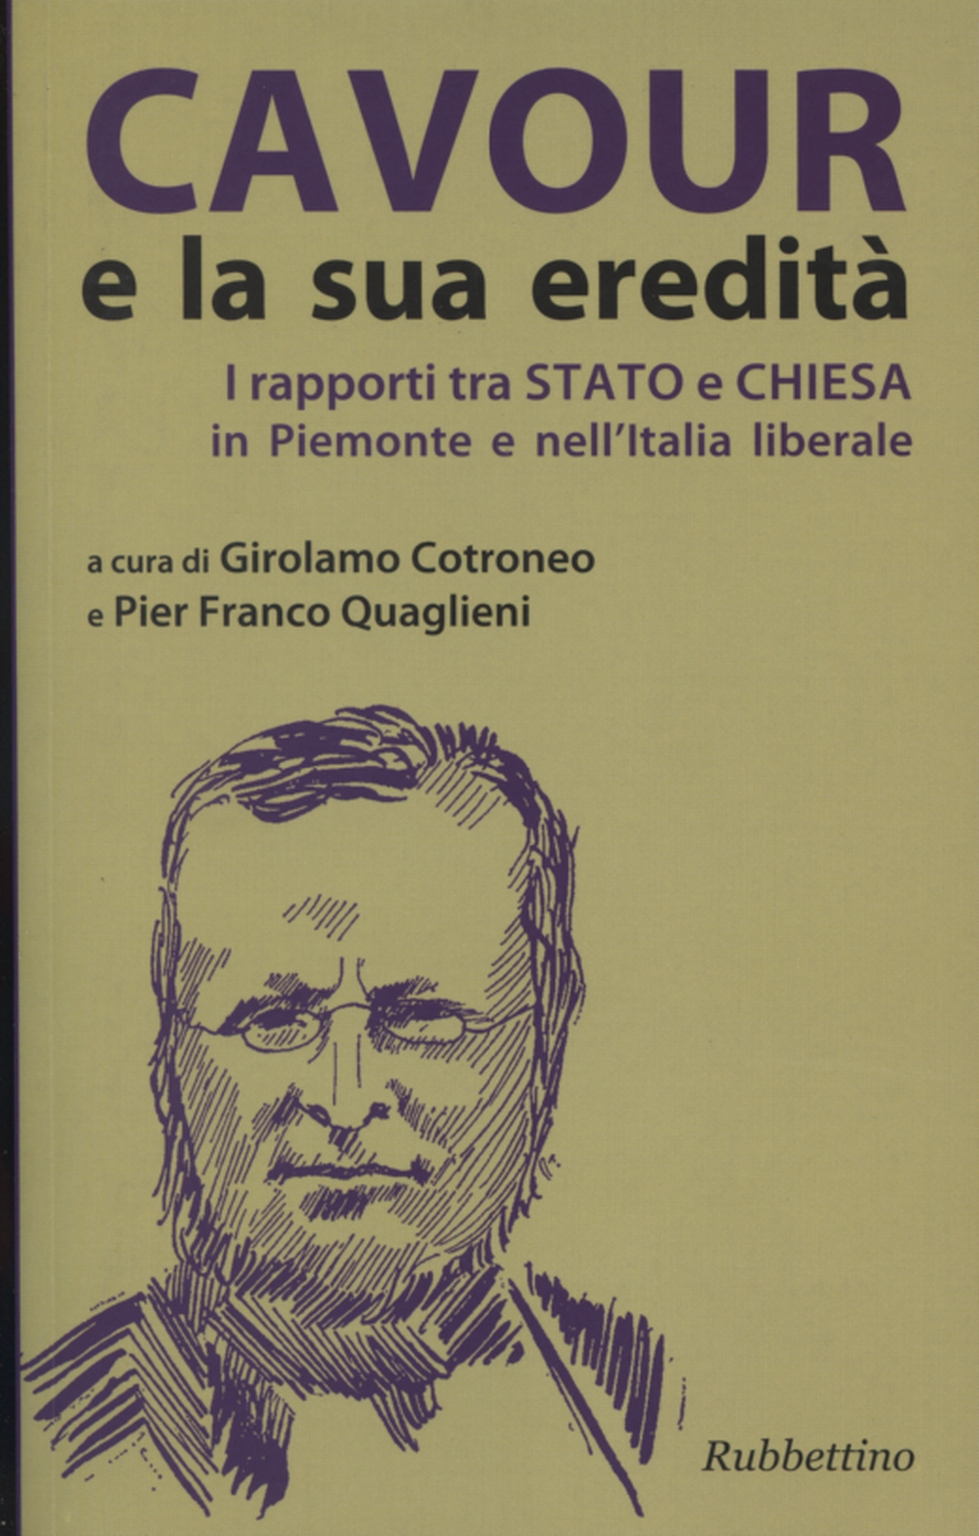 Cavour und sein erbe, Girolamo Cotroneo und Pier Franco Quaglieni